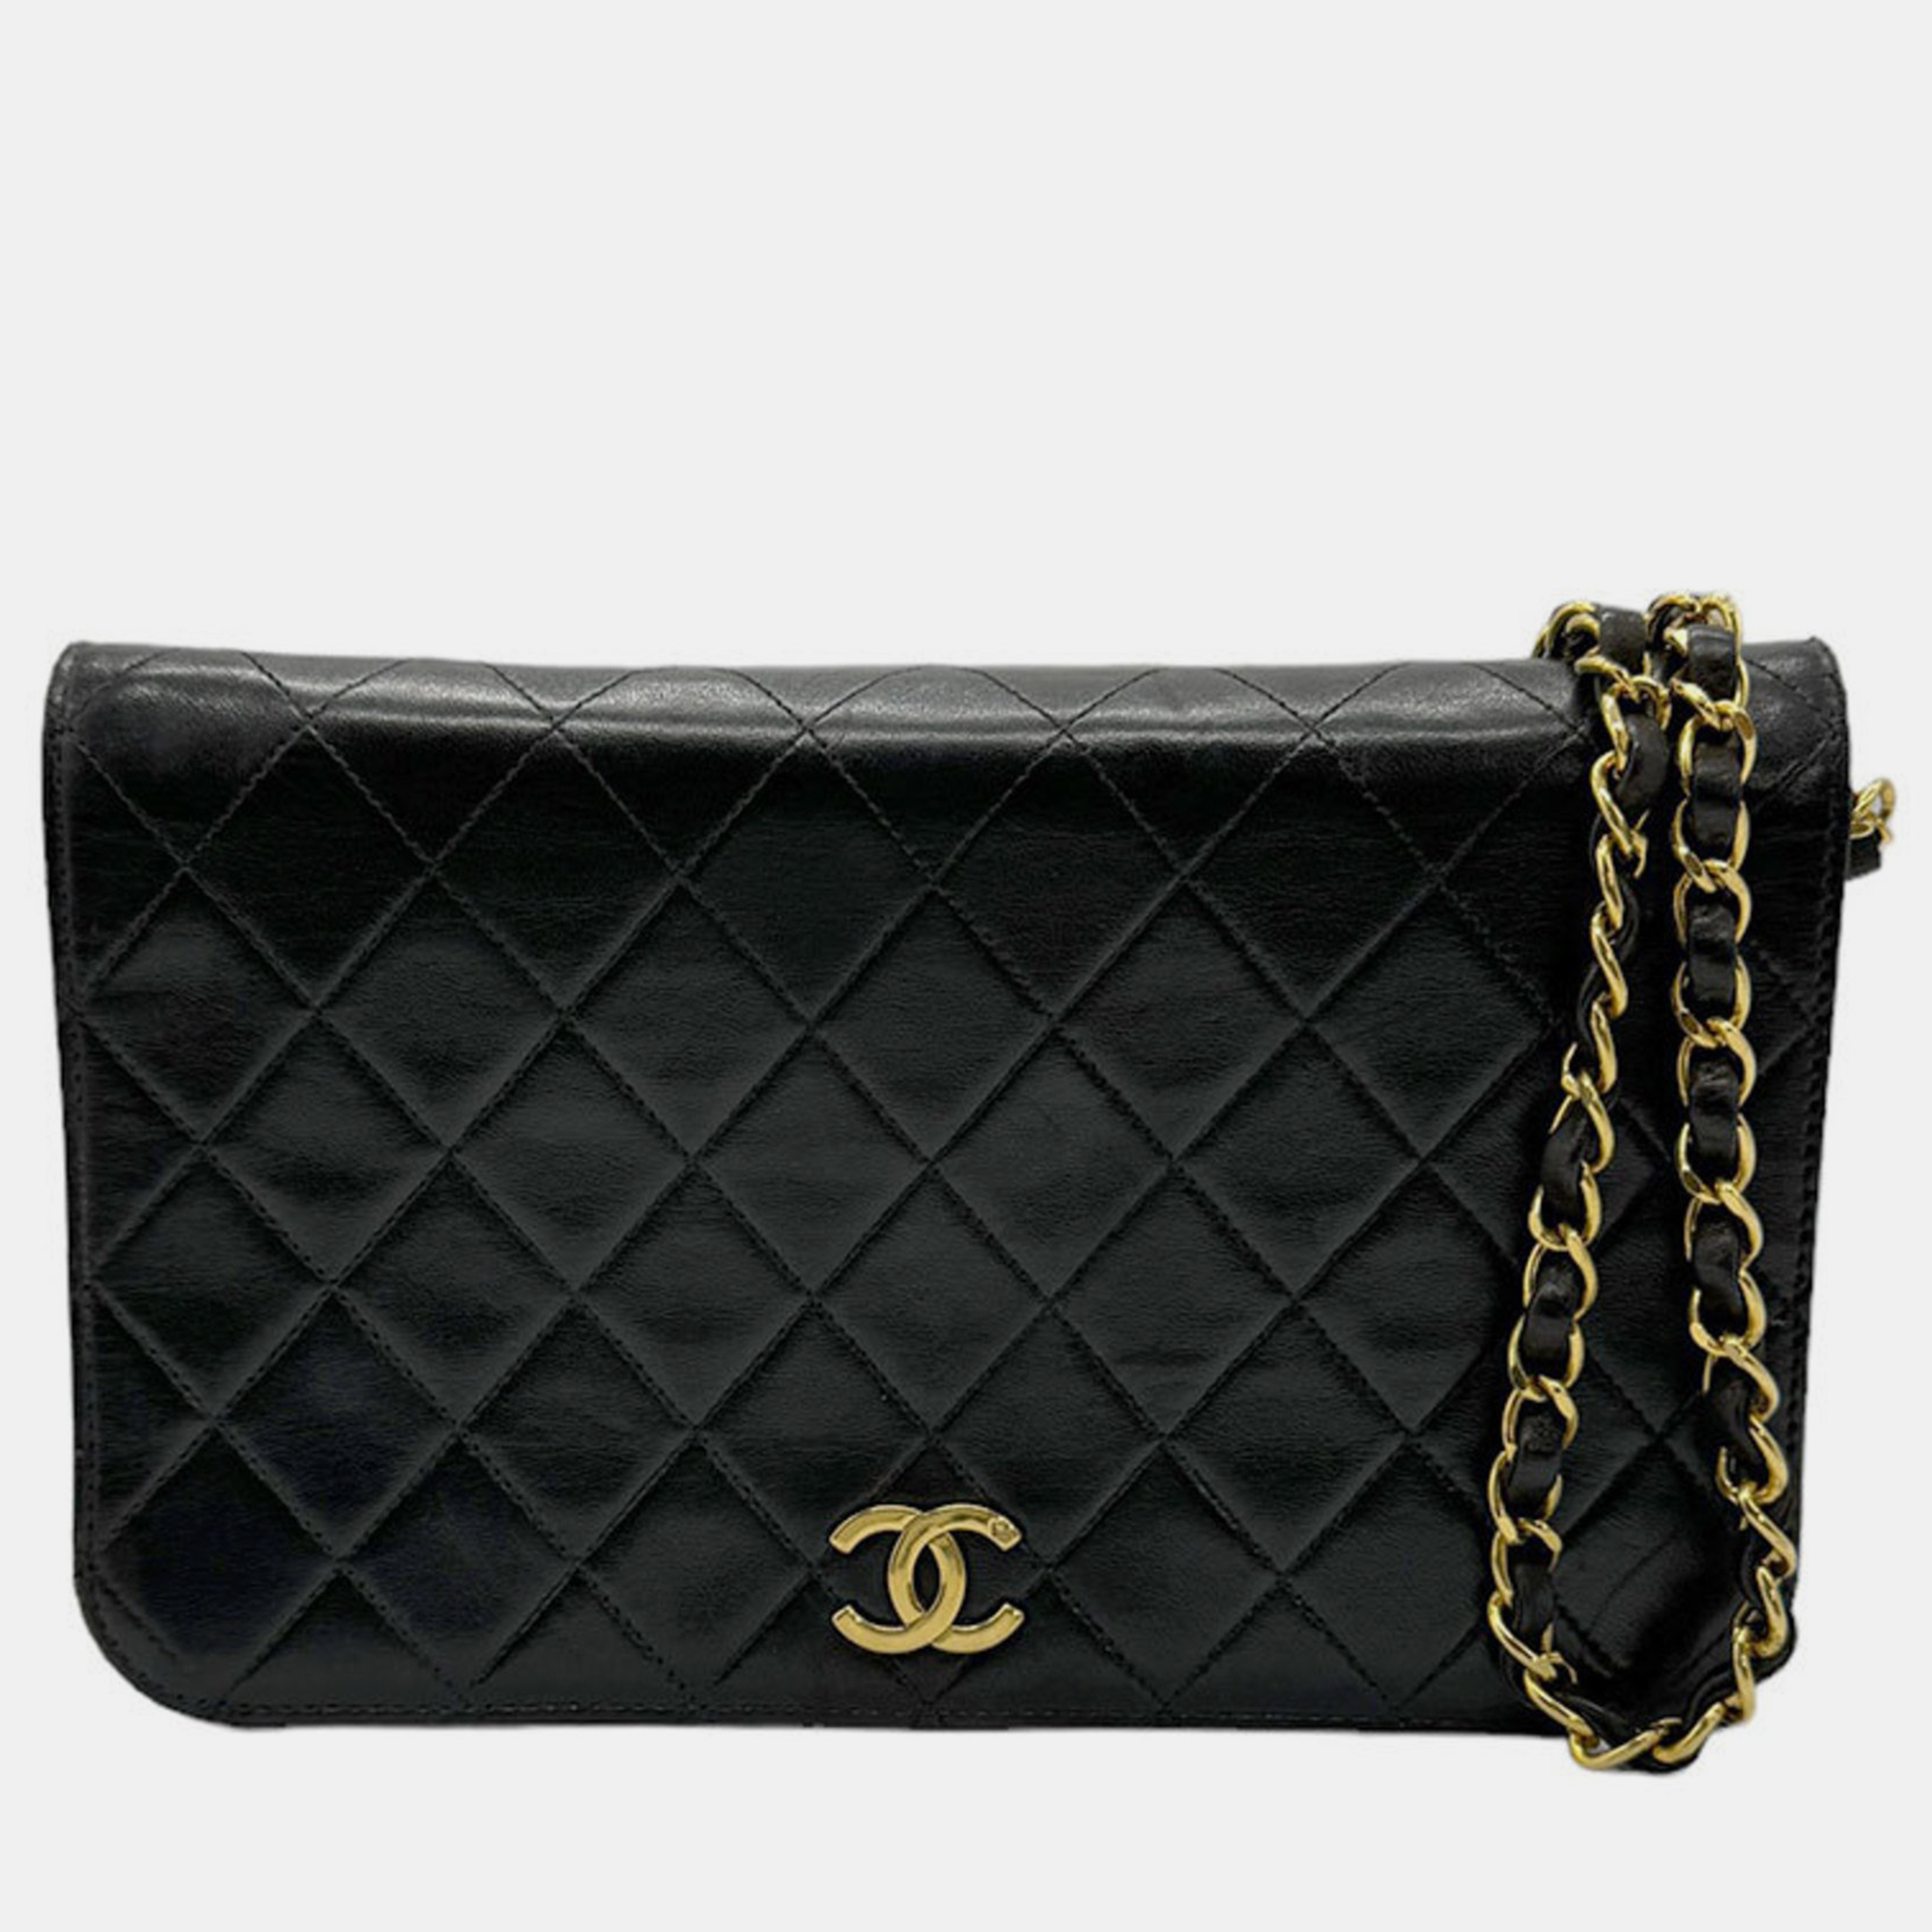 Chanel black leather flap shoulder bag